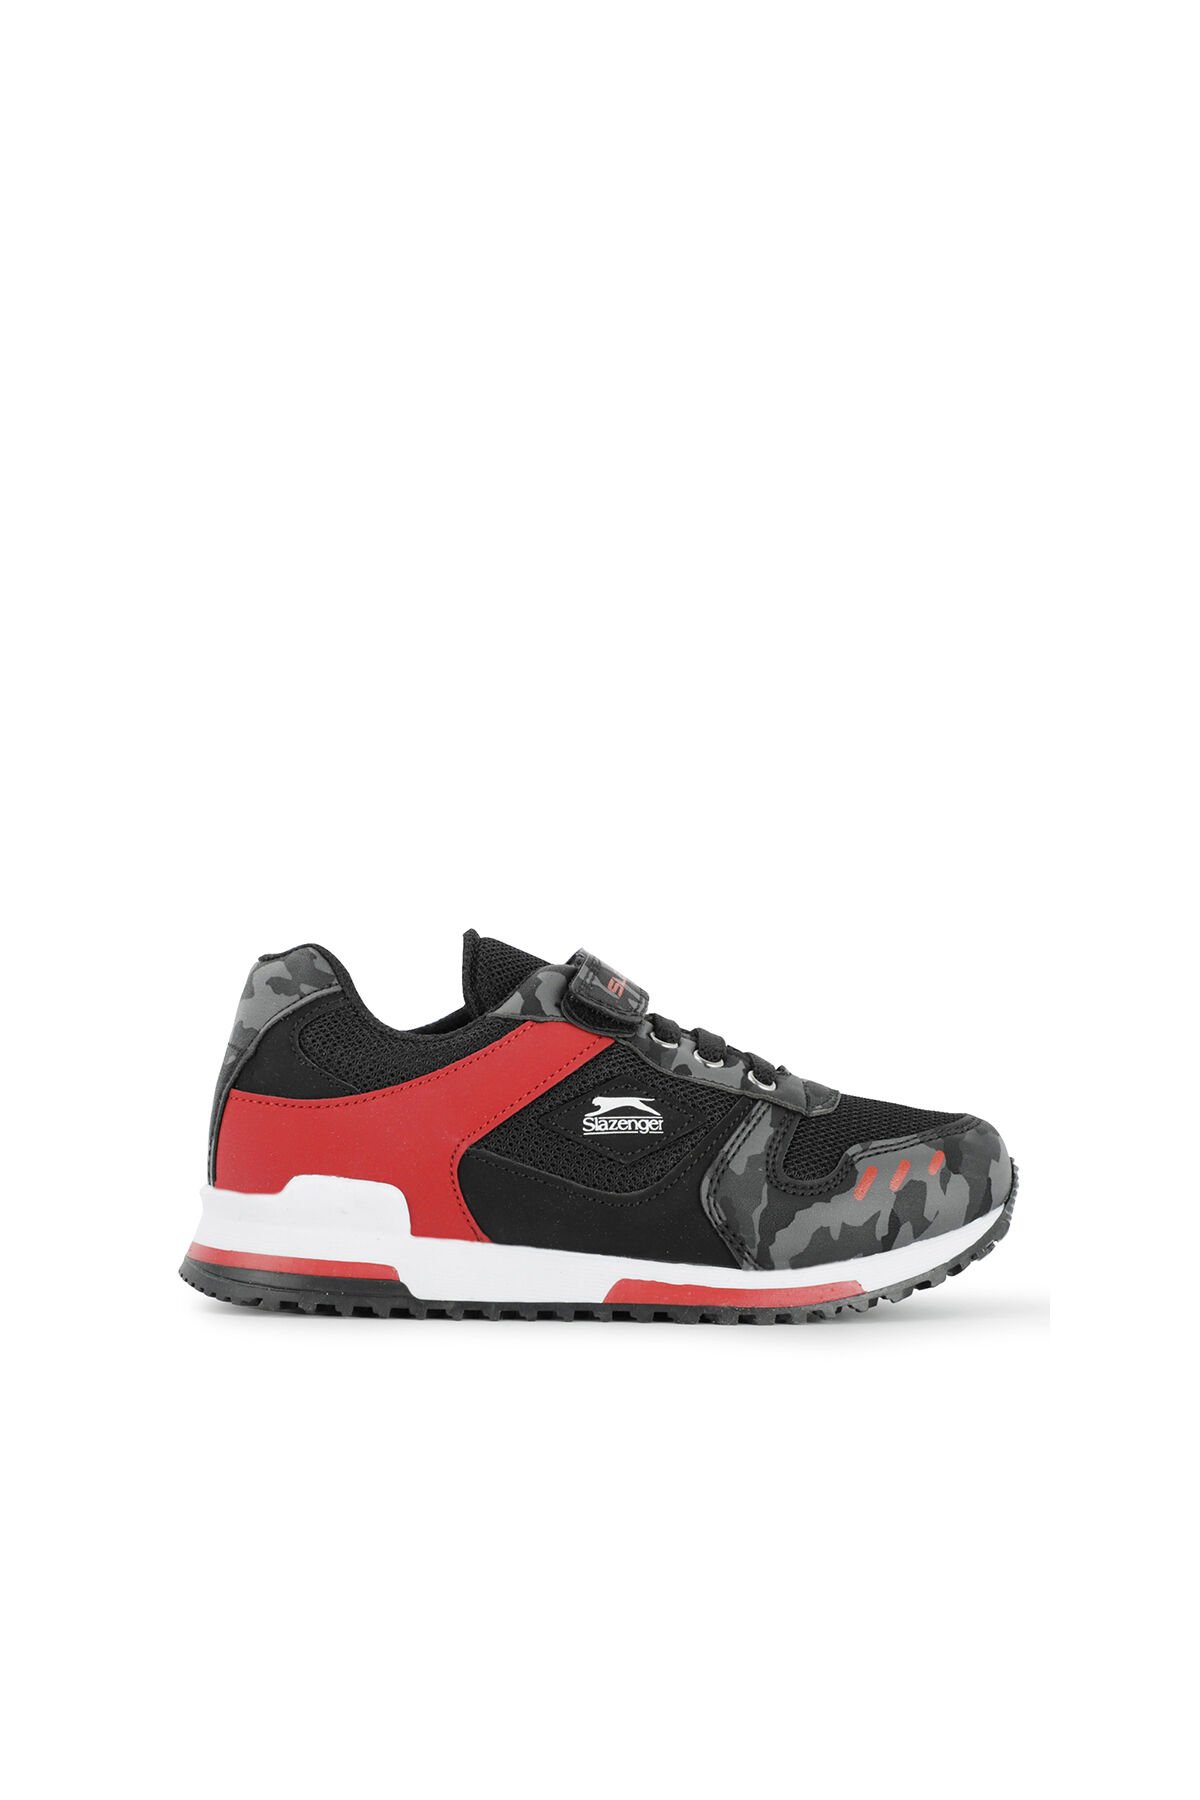 Slazenger EDMOND KTN Sneaker Erkek Çocuk Ayakkabı Siyah Kamuflaj - Thumbnail